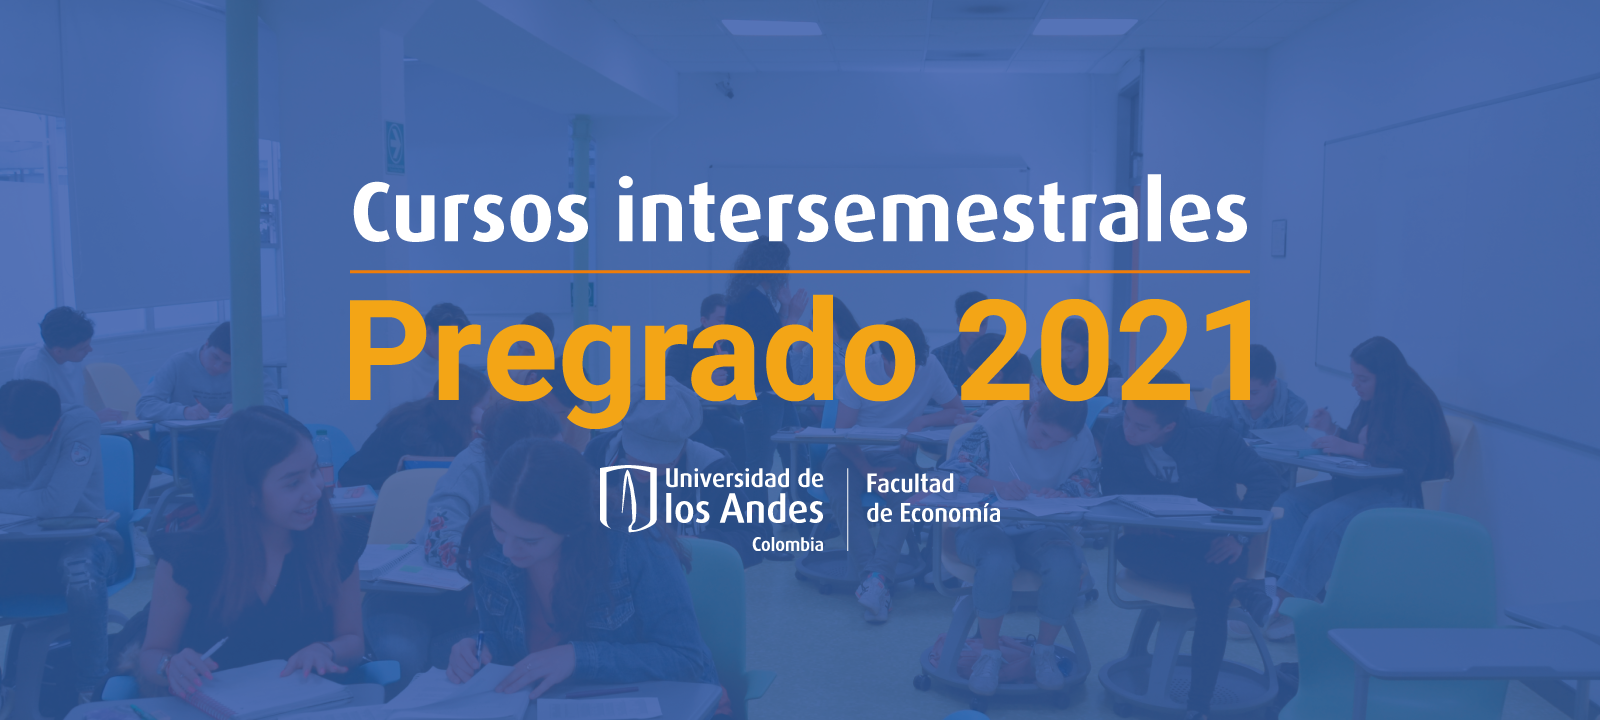 cursos-intersemestrales-pregrado-desktop.png 